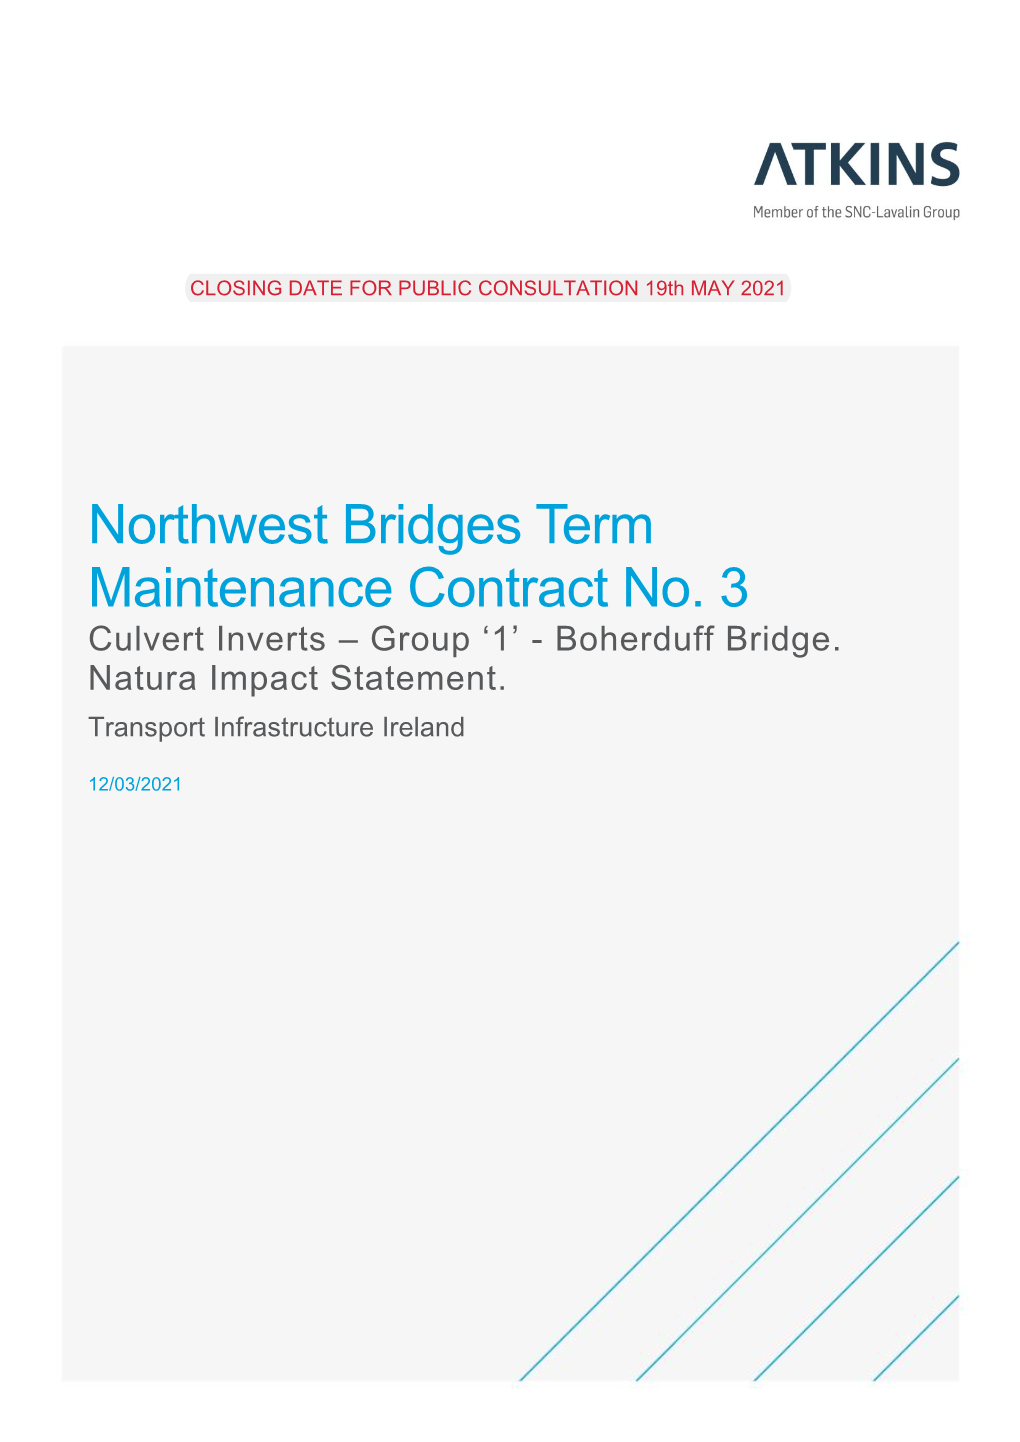 Northwest Bridges Term Maintenance Contract No